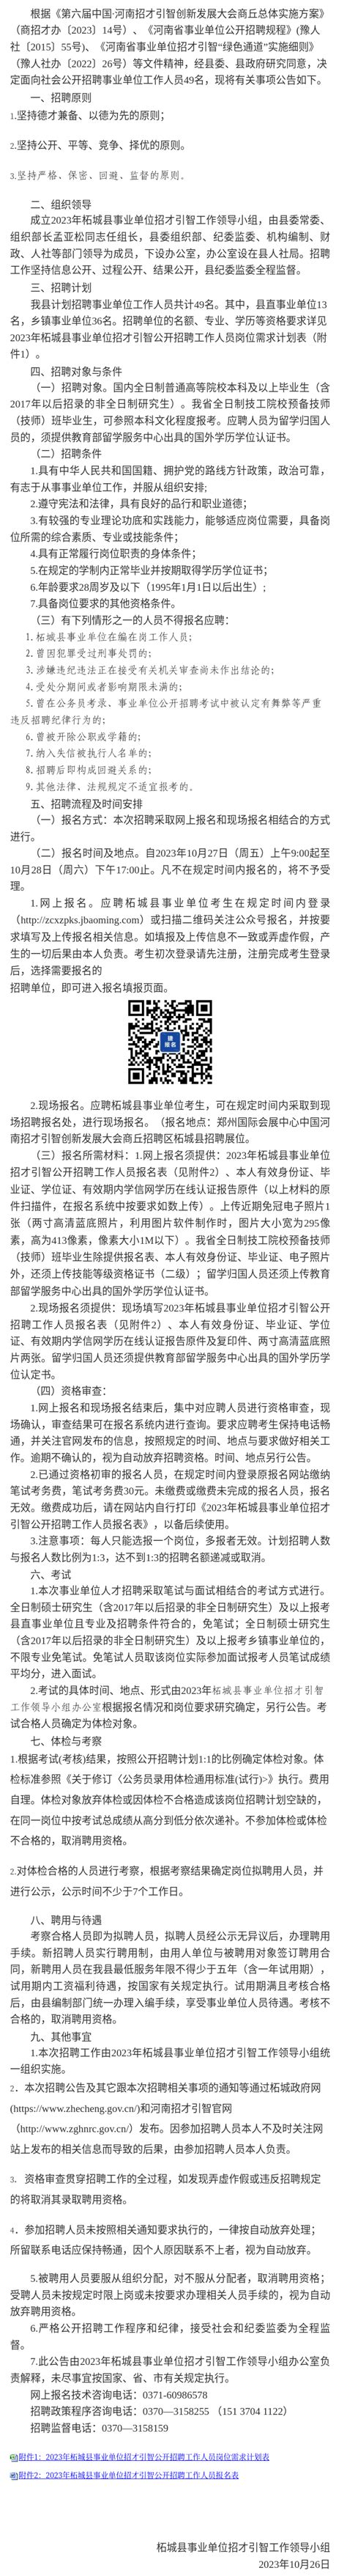 杨利民 - 河南金沙置业集团有限公司 - 法定代表人/高管/股东 - 爱企查